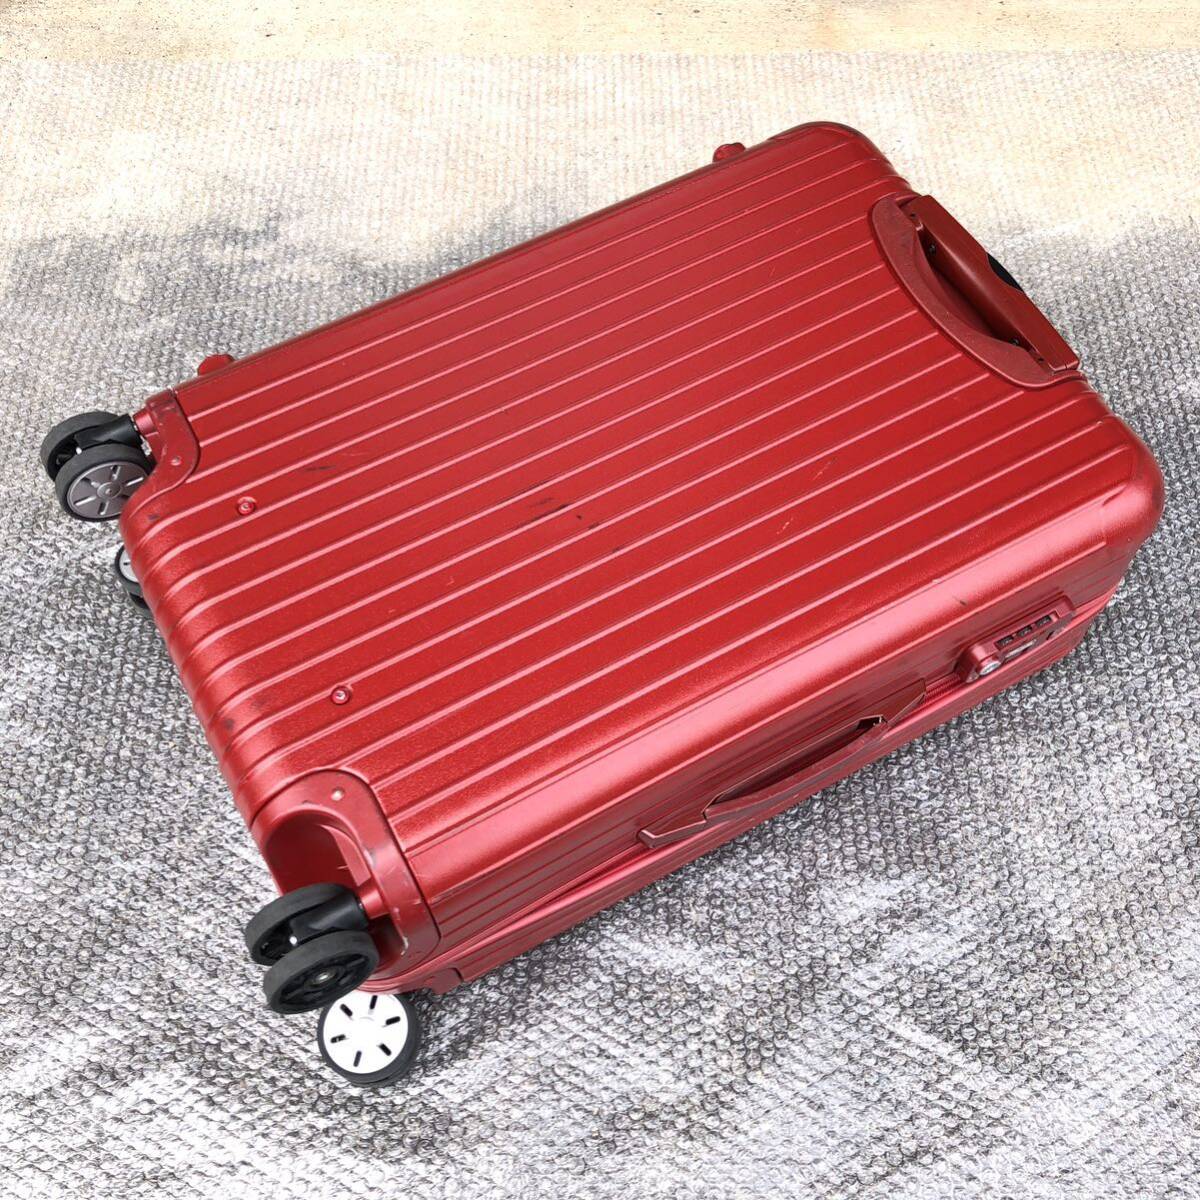 【リモワ】本物 RIMOWA スーツケース SALSA サルサ 4輪 TSAロック キャリーケース 875 63 旅行かばん 63L トラベルバッグ 赤色系_画像7